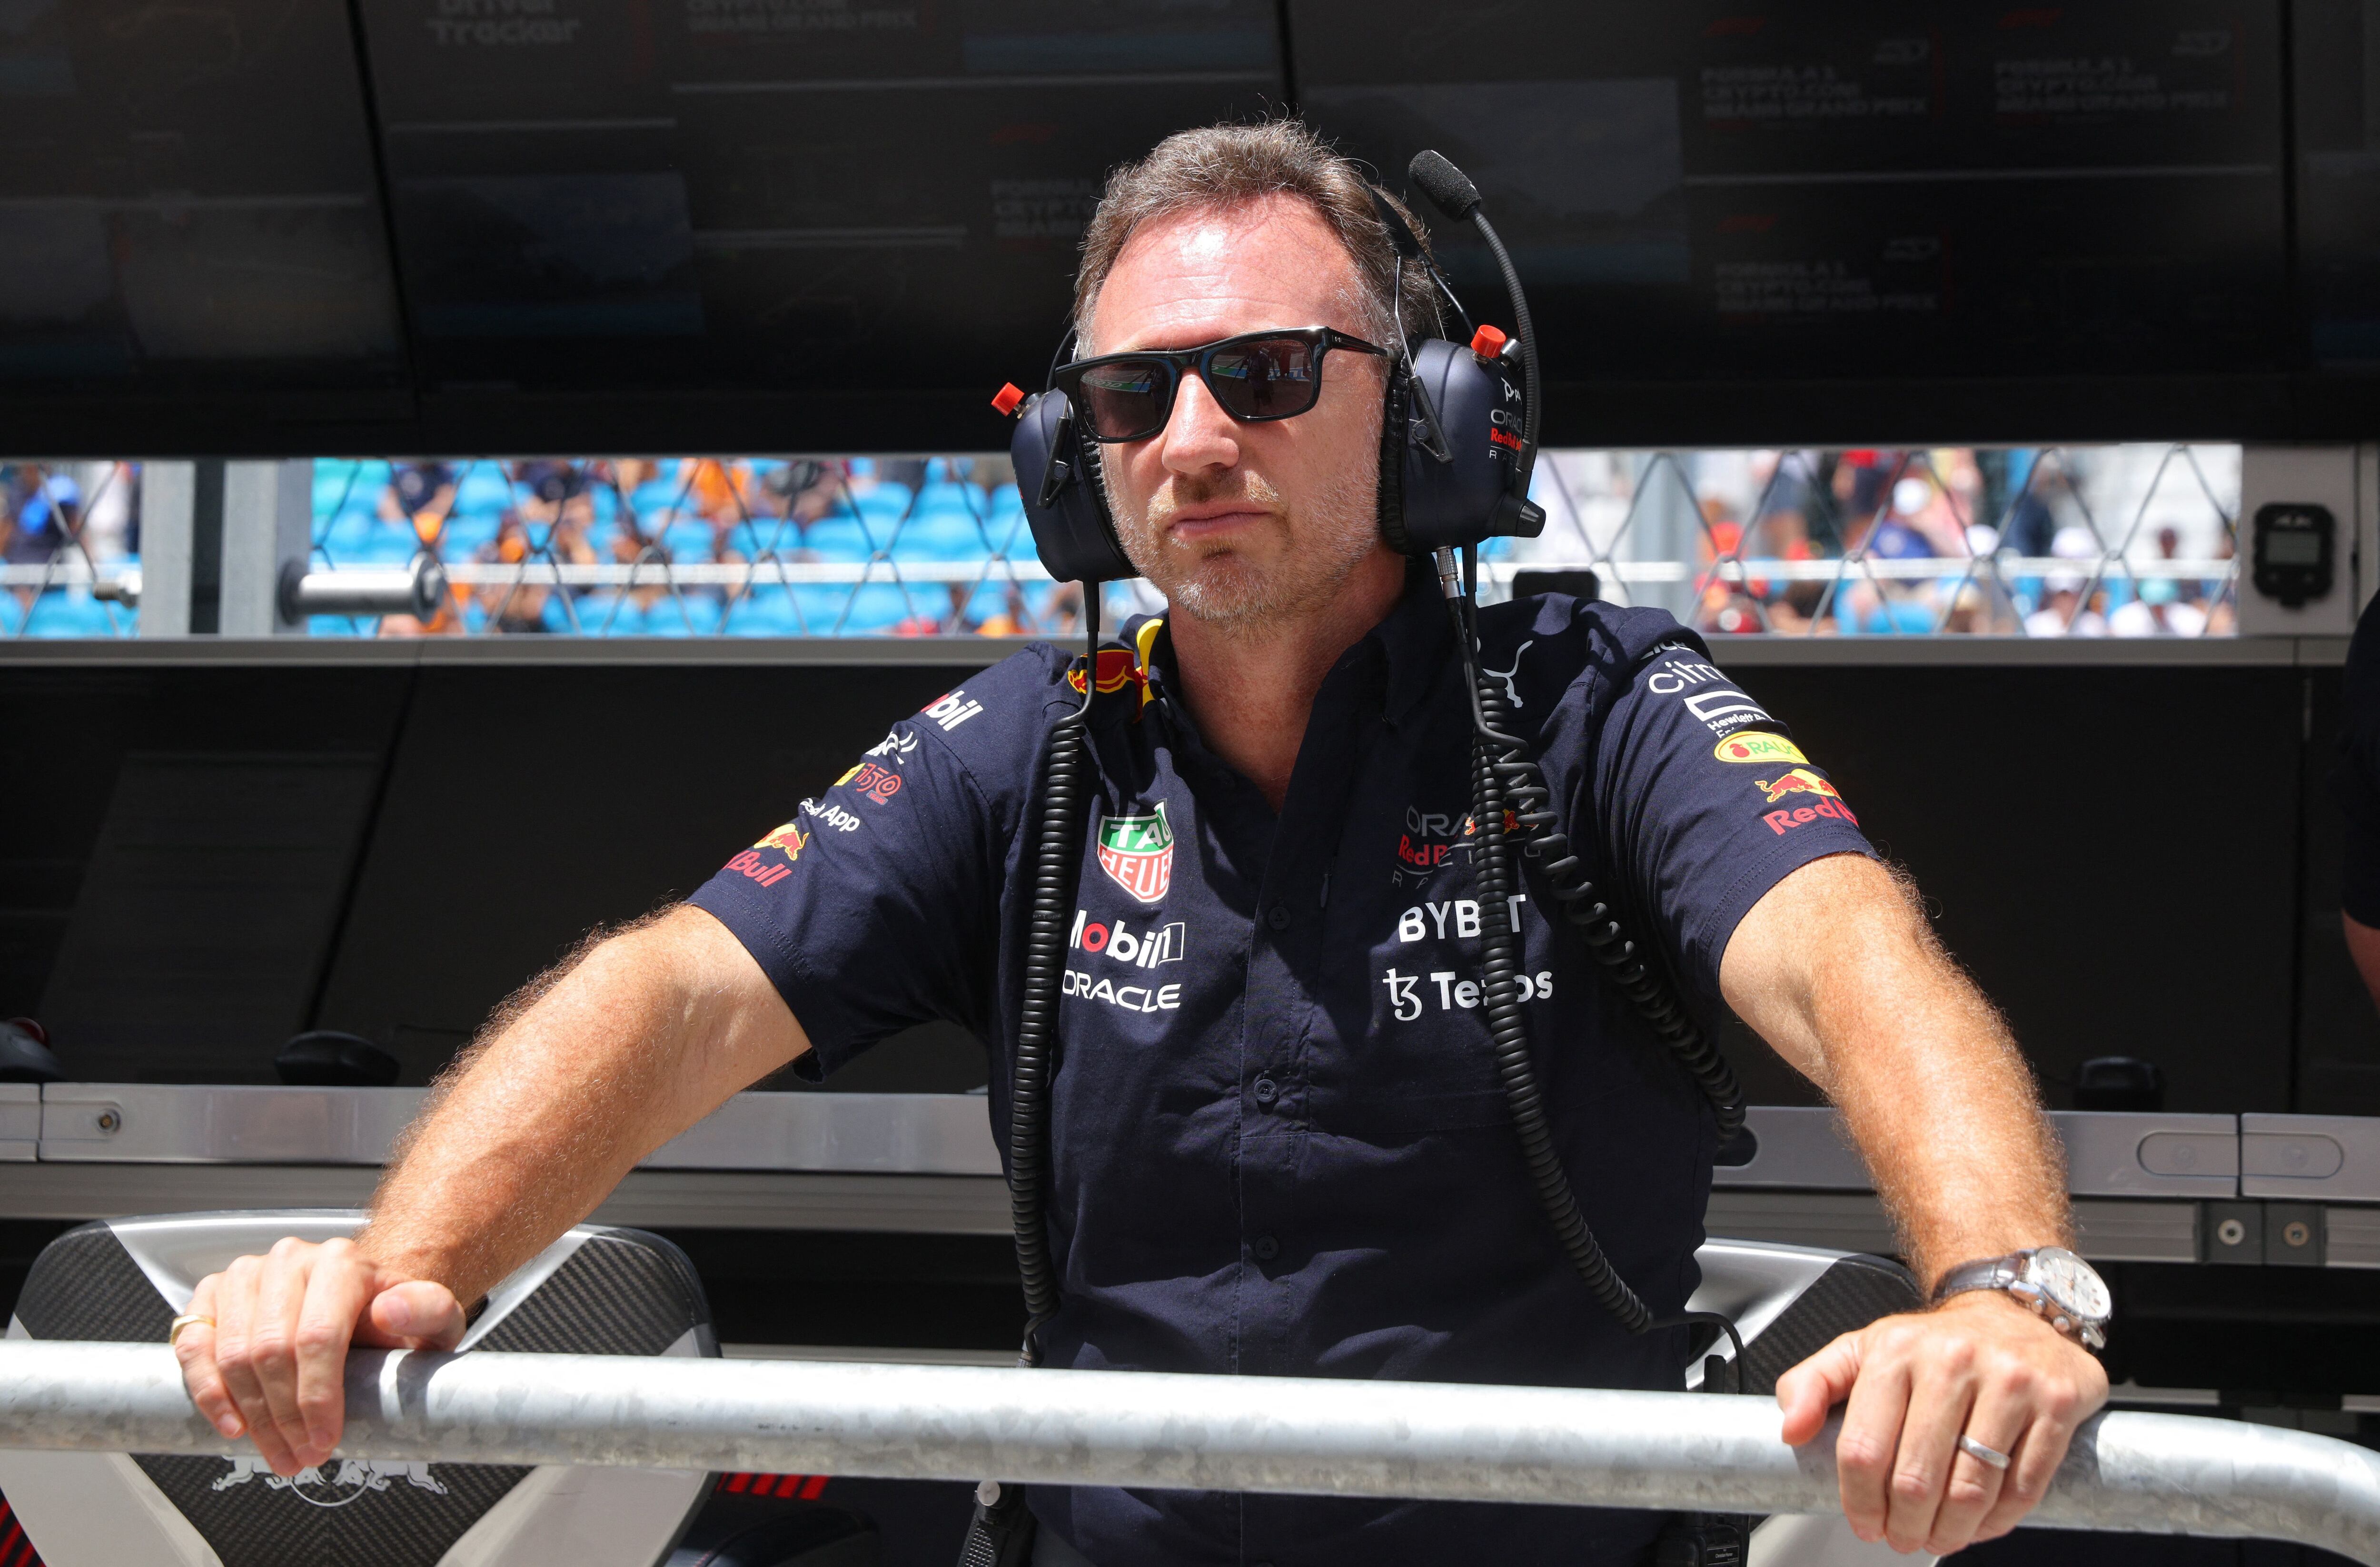 Christian Horner aseguró que en Red Bull Racing están concentrados por el campeonato de constructores (Foto: REUTERS/Brian Snyder)